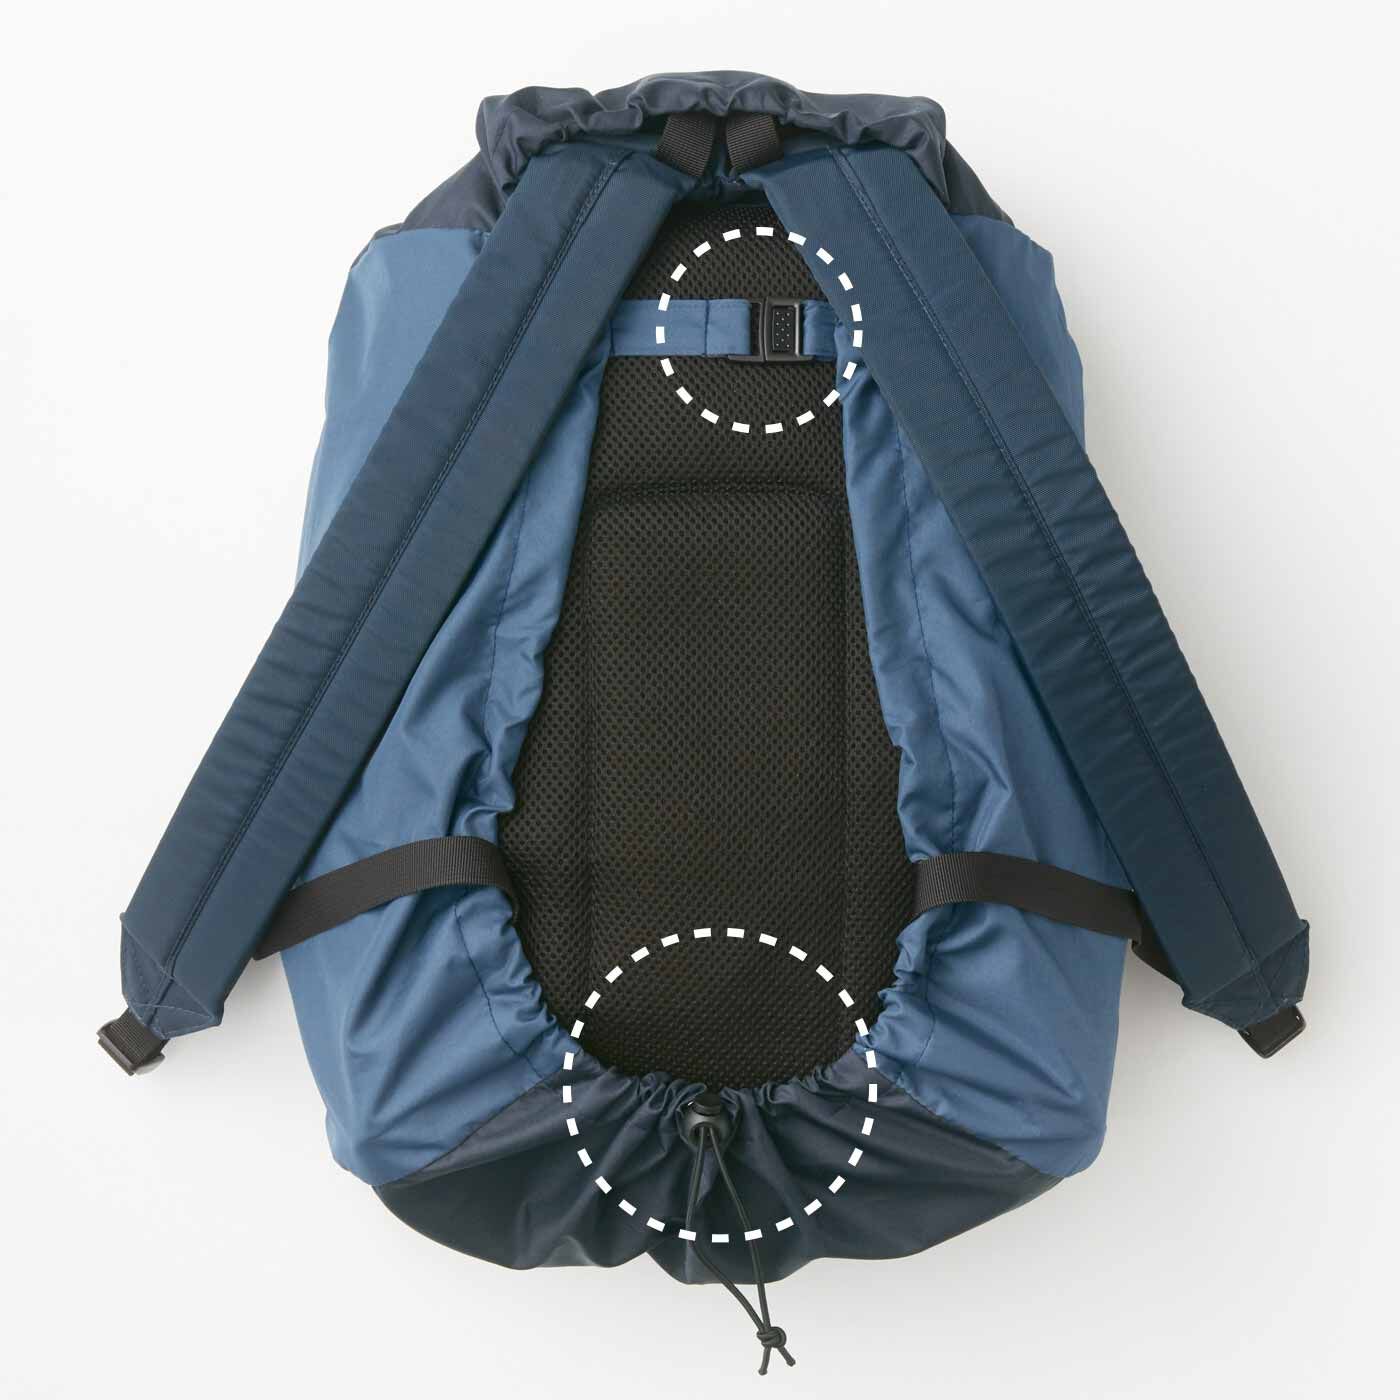 ラミプリュス|ラミプリュス　雨ぬれ軽減 傘屋さんと作ったリュックのためのレインカバーの会|リュックにかぶせてバックルとゴムで固定するだけの簡単装着。